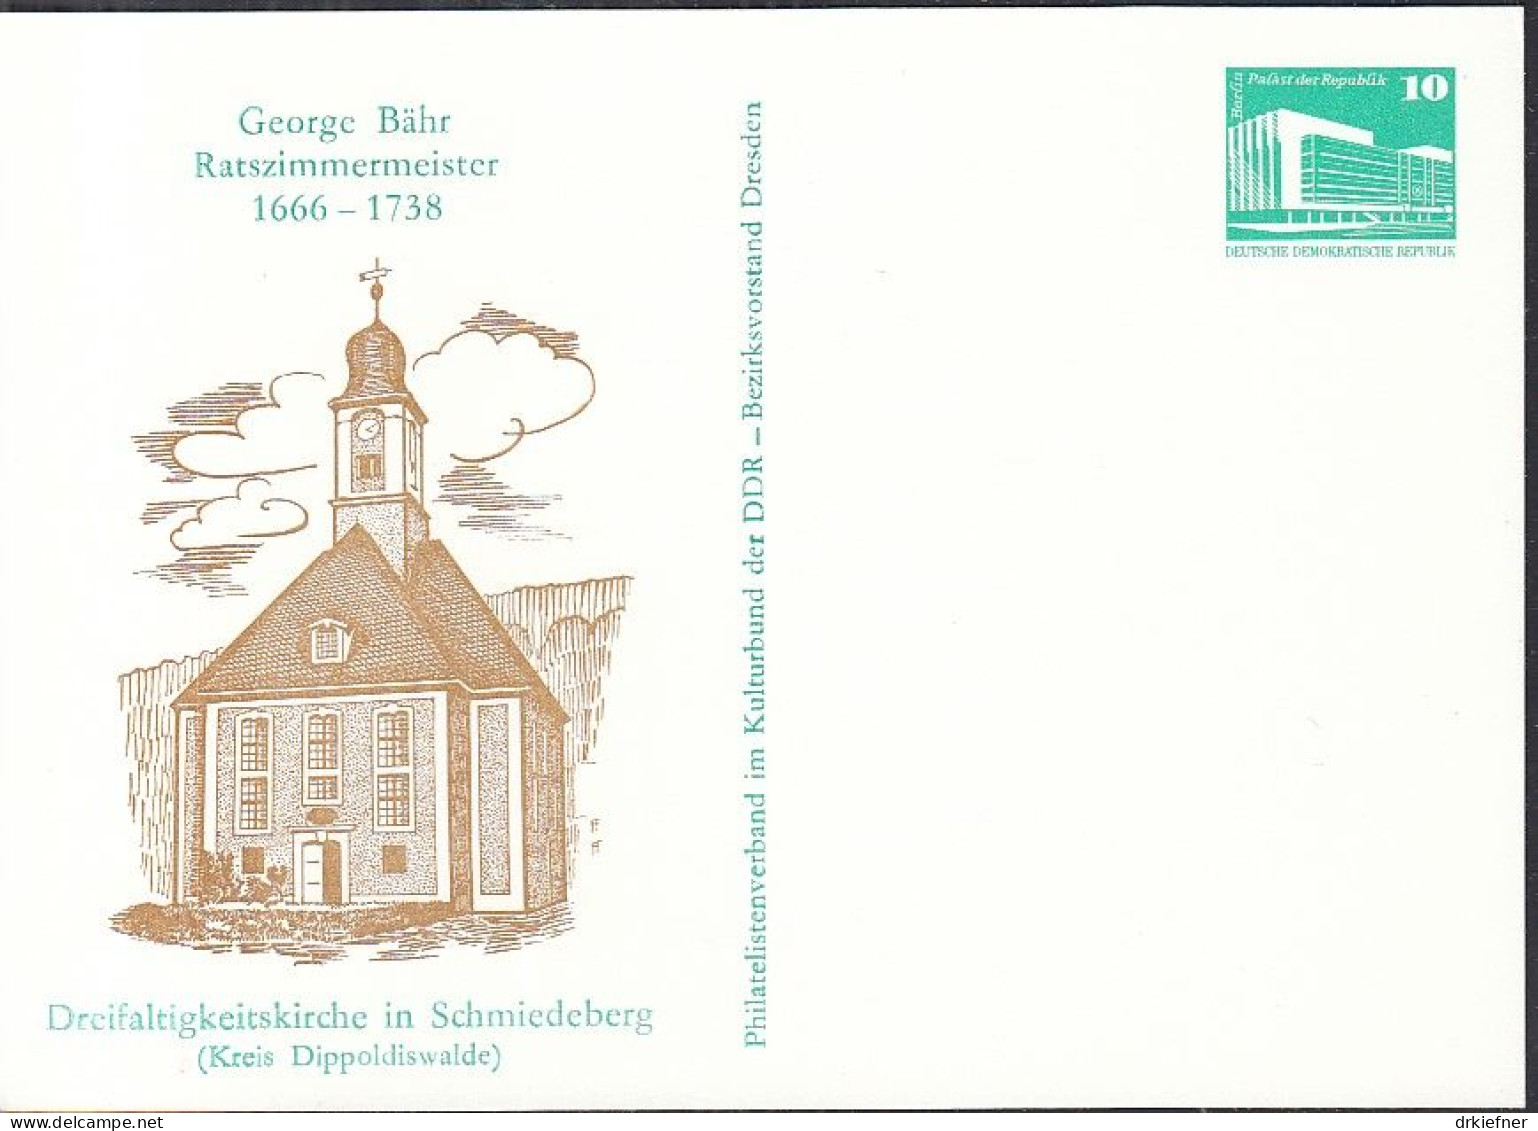 DDR PP 18, Ungebraucht, George Bähr, Ratszimmermeister, Dreifaltigkeitskirche Schmiedeberg, 1988 - Privatpostkarten - Ungebraucht